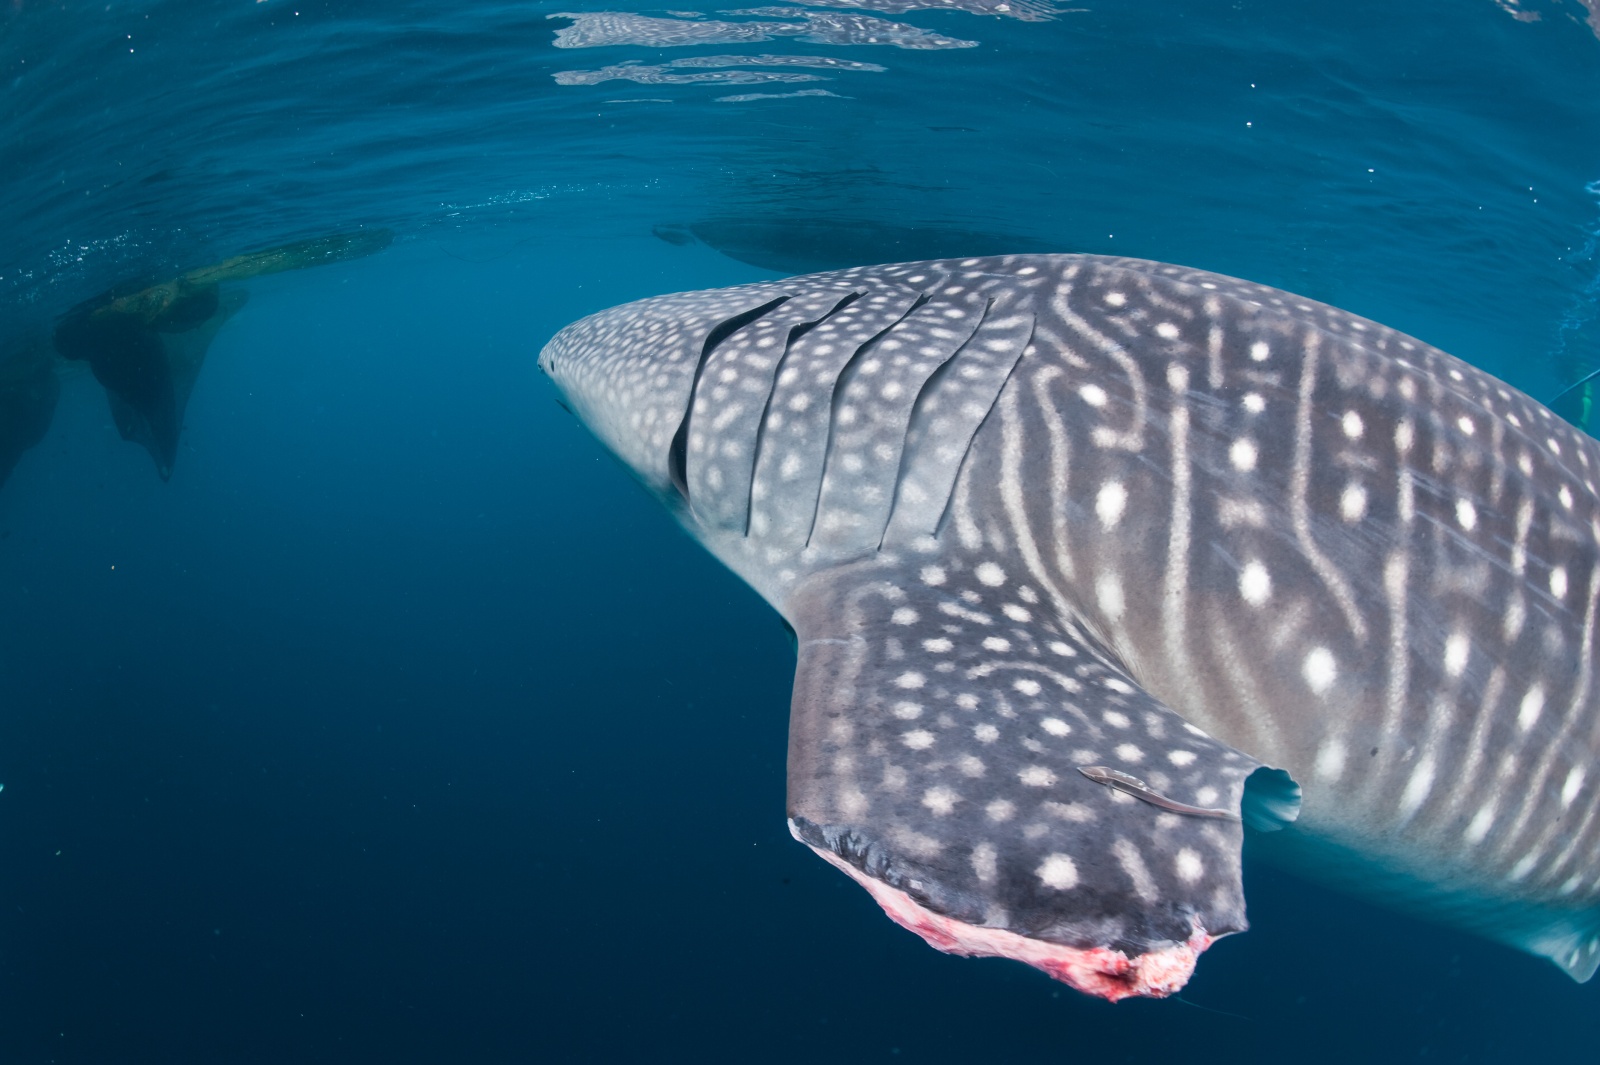 La pinna mozzata degli squali balena - Il taglio netto e fresco della pinna di questo grande esemplare di squalo balena. Foto pubblicata sul sito del National Geographic Italia.